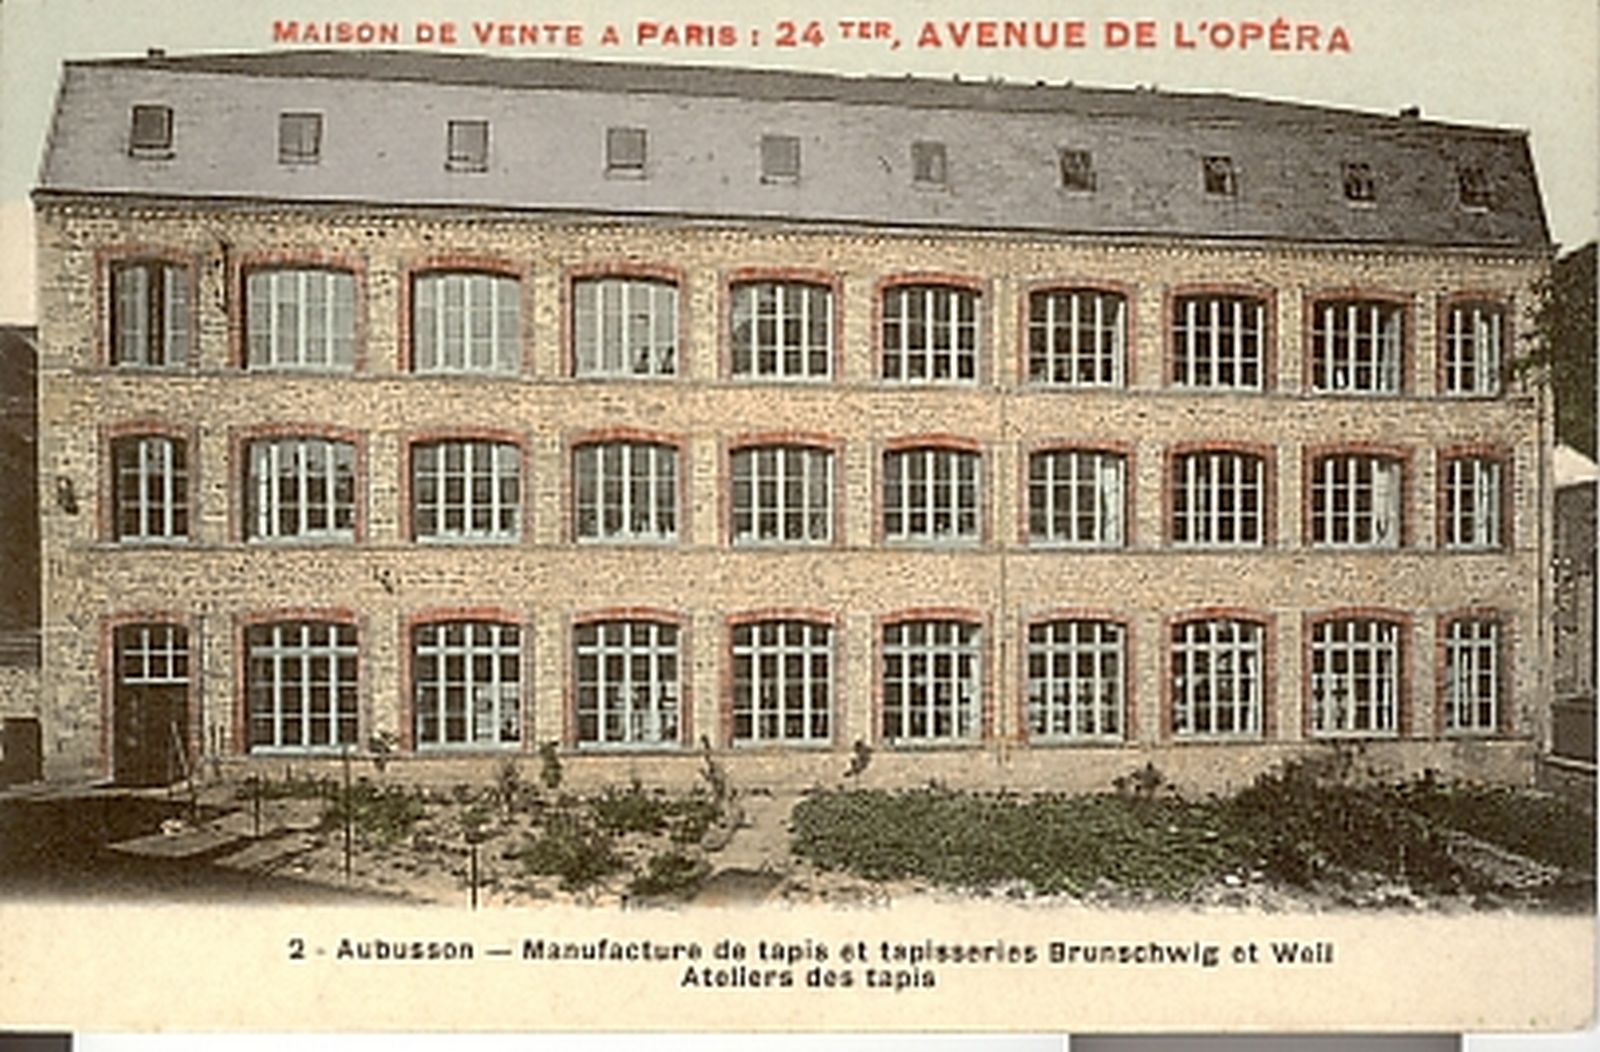 Carte postale des ateliers de tapis de la manufacture Brunschwig et Weil (1er quart 20e siècle) (collection particulière).